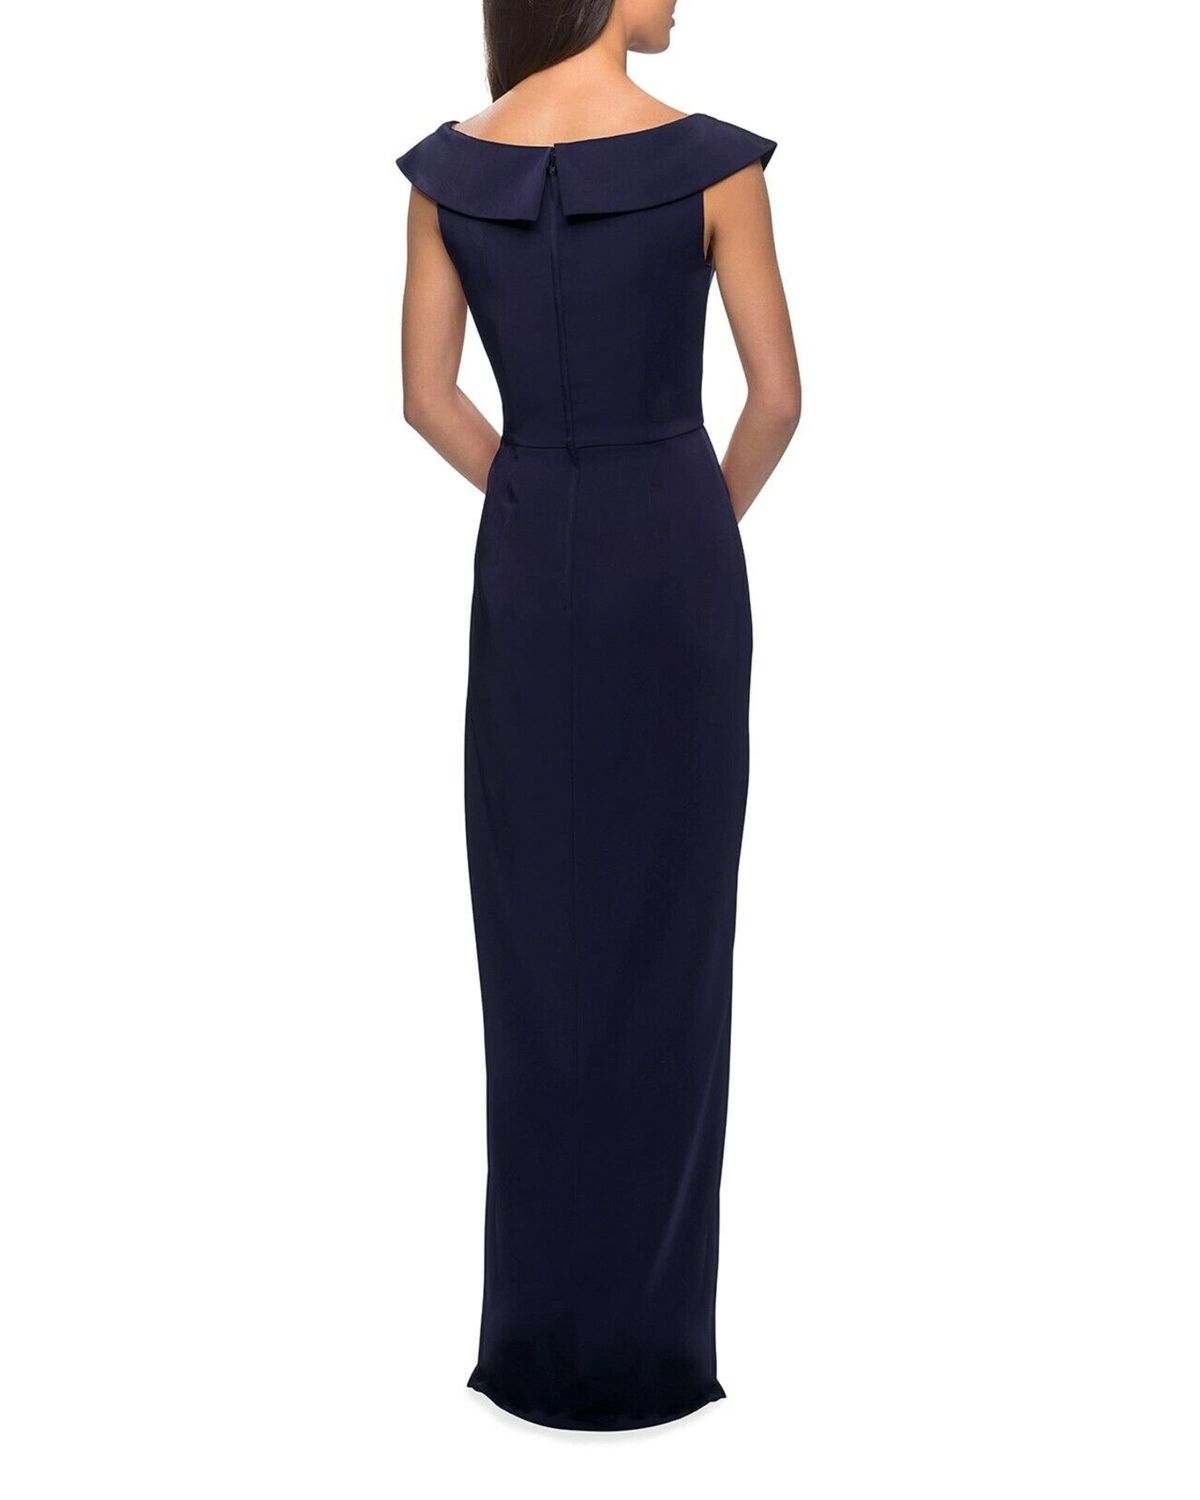 La Femme Size 8 Off The Shoulder Navy Blue A-line Dress on Queenly